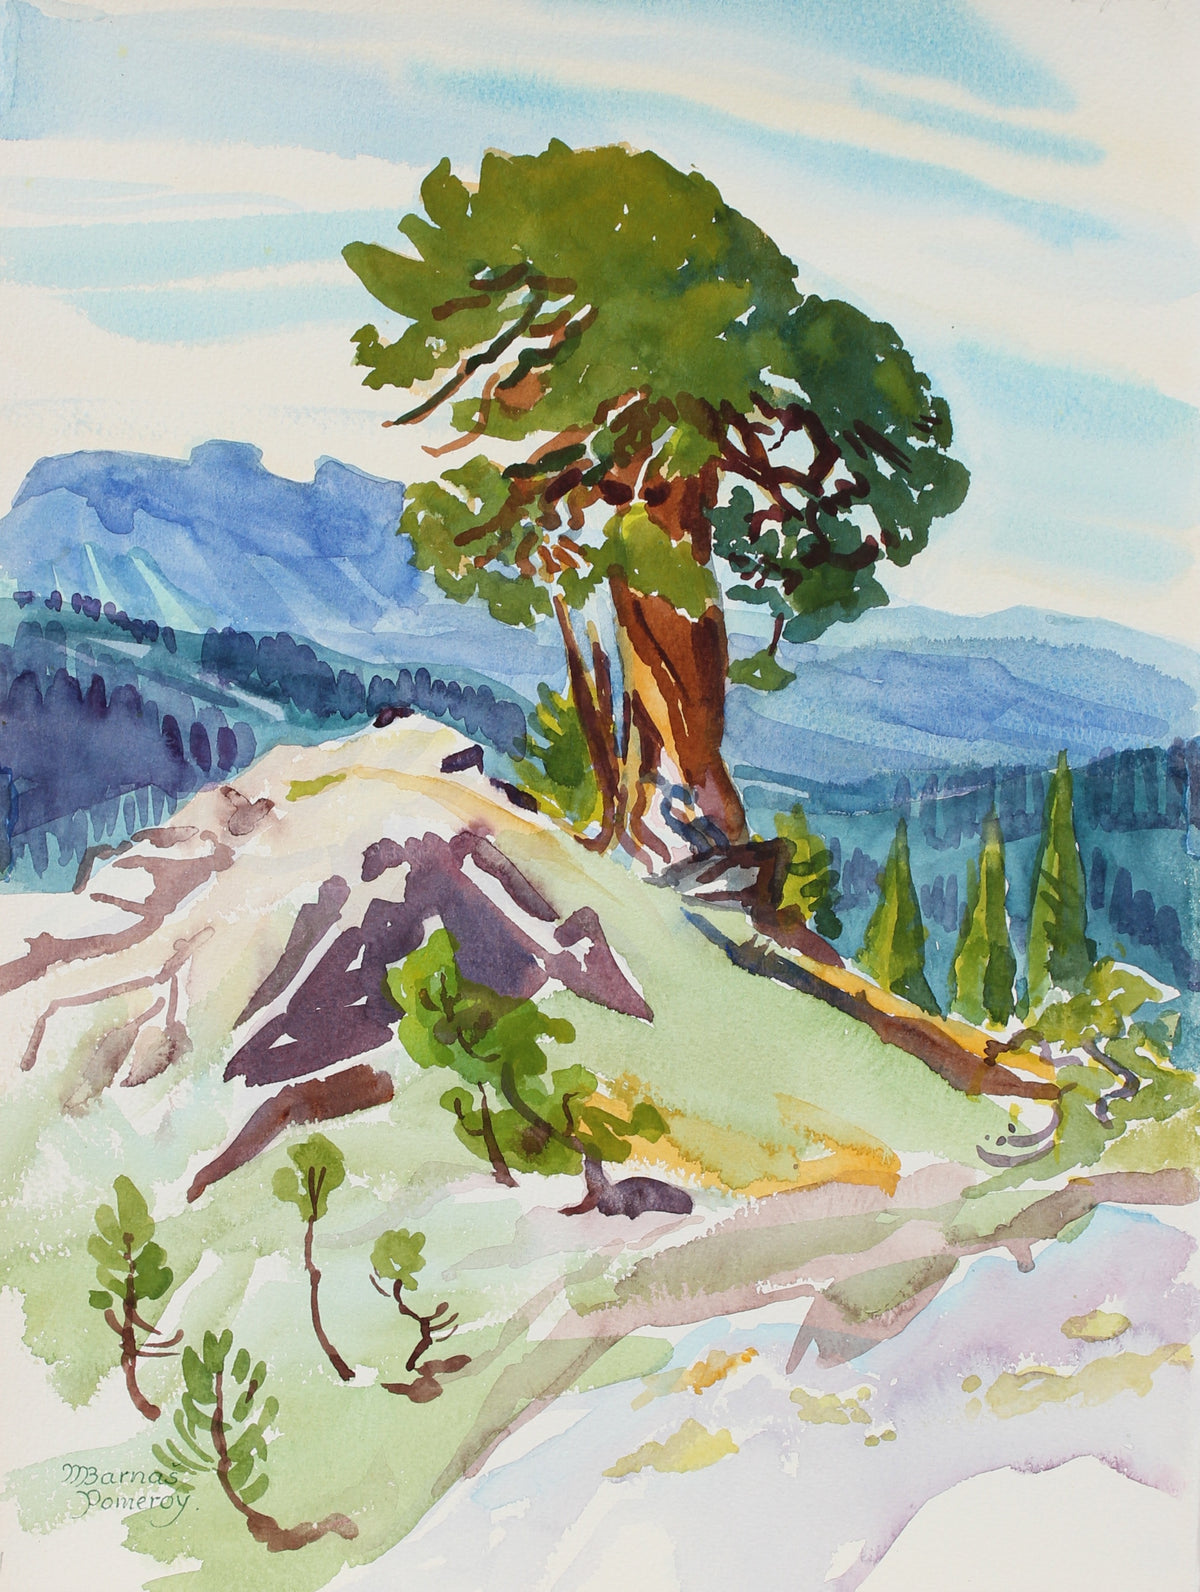 &lt;i&gt;Ancient Juniper&lt;/i&gt;&lt;br&gt;July 1987 Watercolor&lt;br&gt;&lt;br&gt;#93560